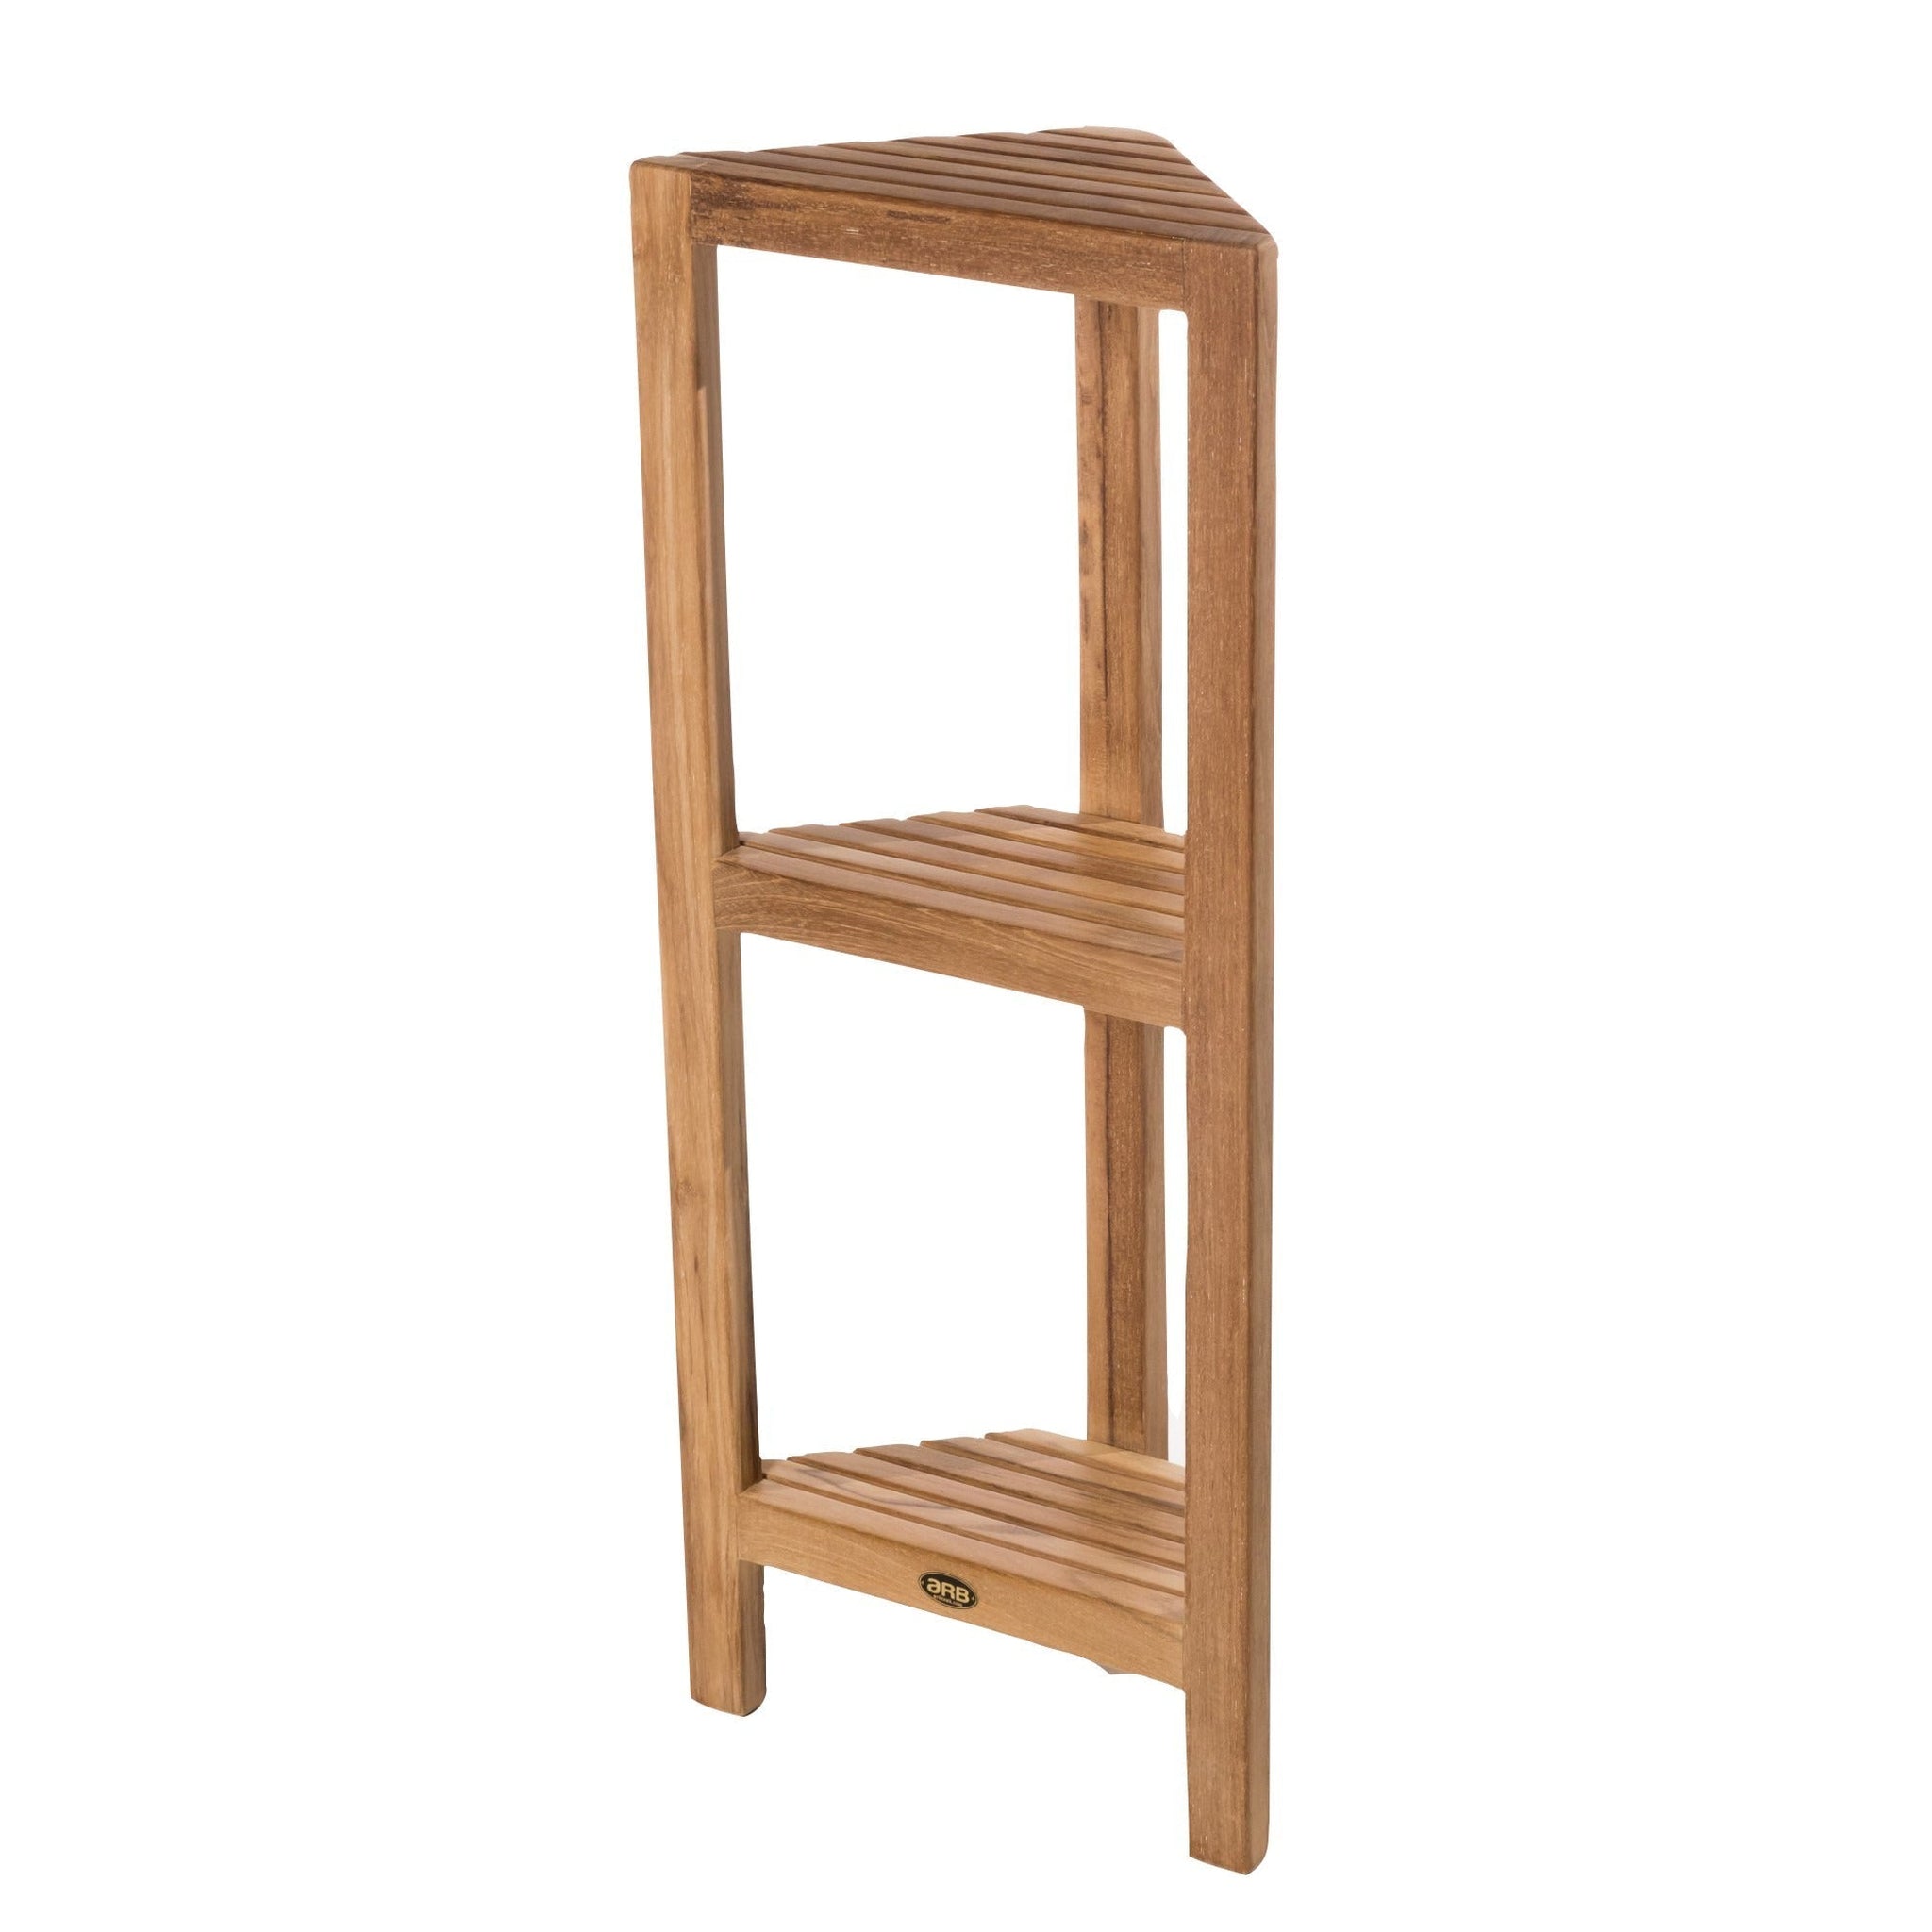 3 Tier Corner Shelf, 100% Real Bamboo Shower Corner Shelves Free